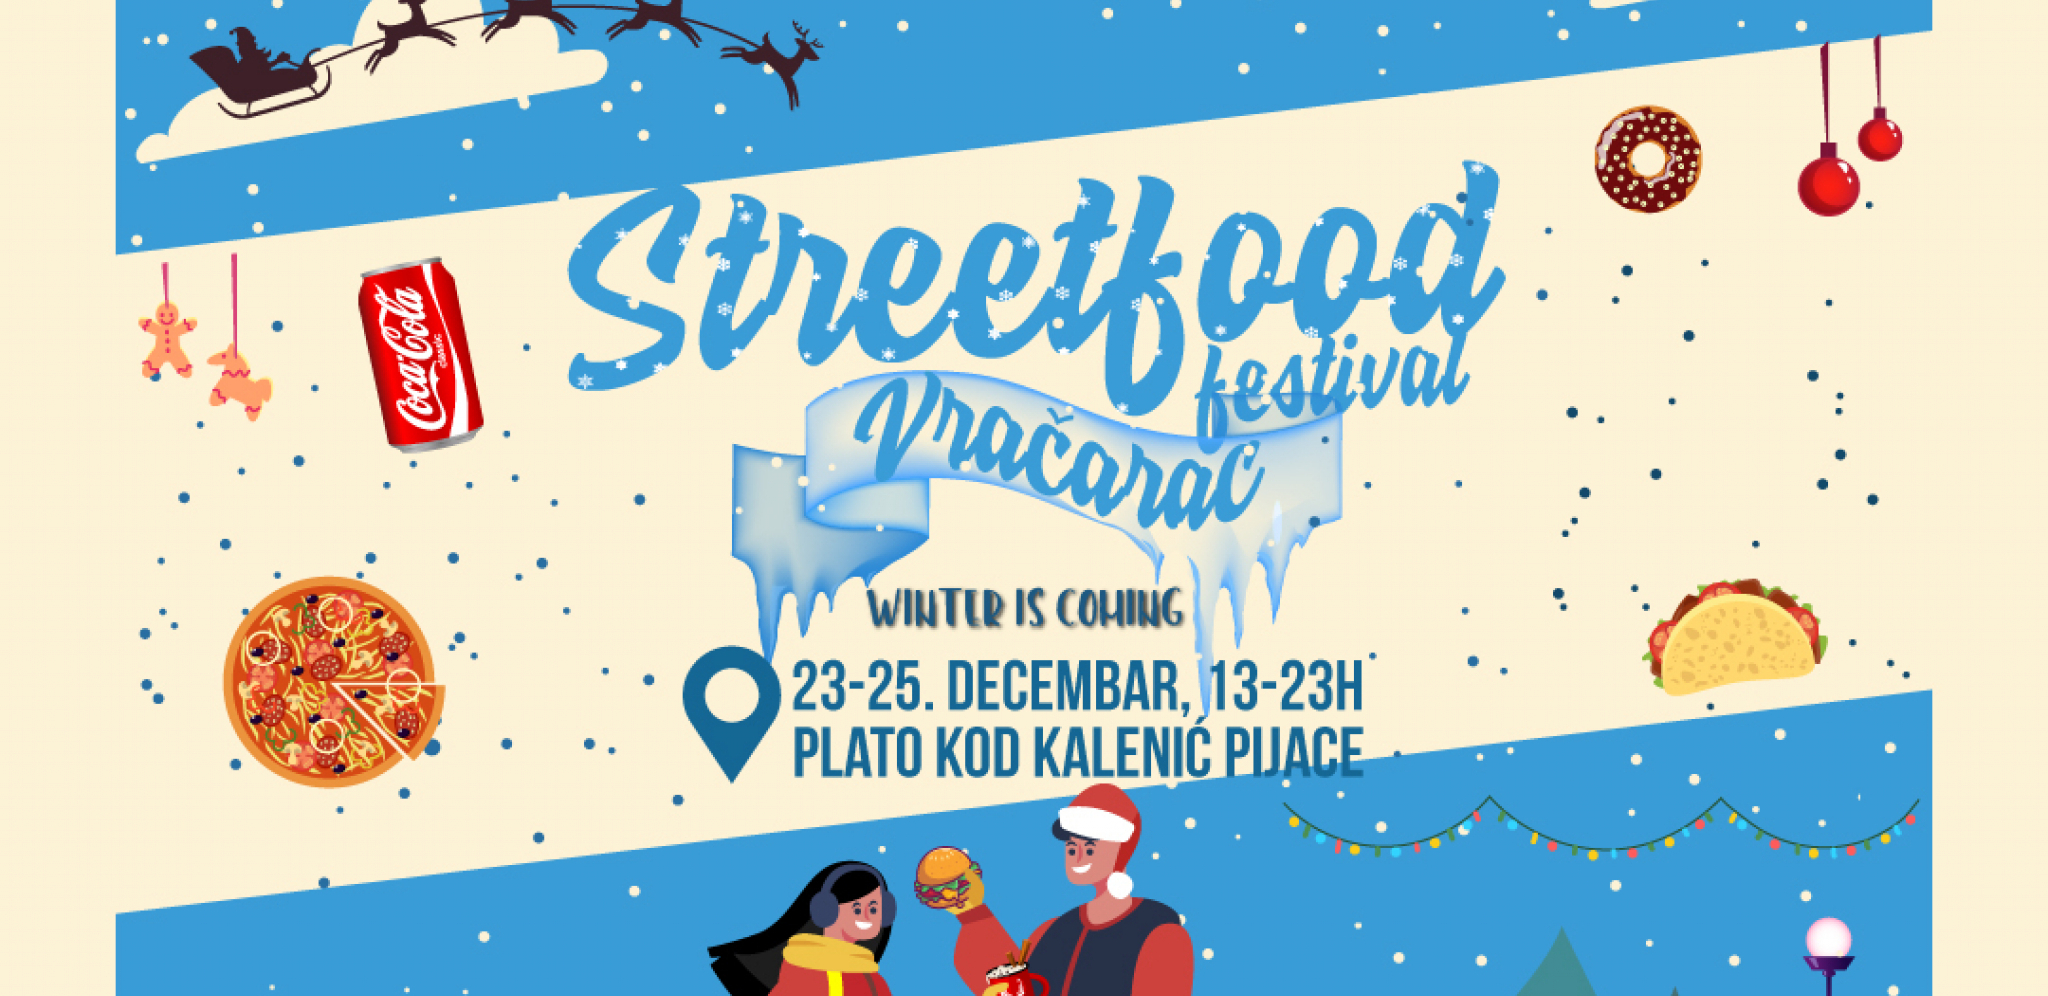 STREET FOOD FESTIVAL U SRCU VRAČARA Uskoro počinje “Vračarac”- dugoočekivani festival ulične hrane